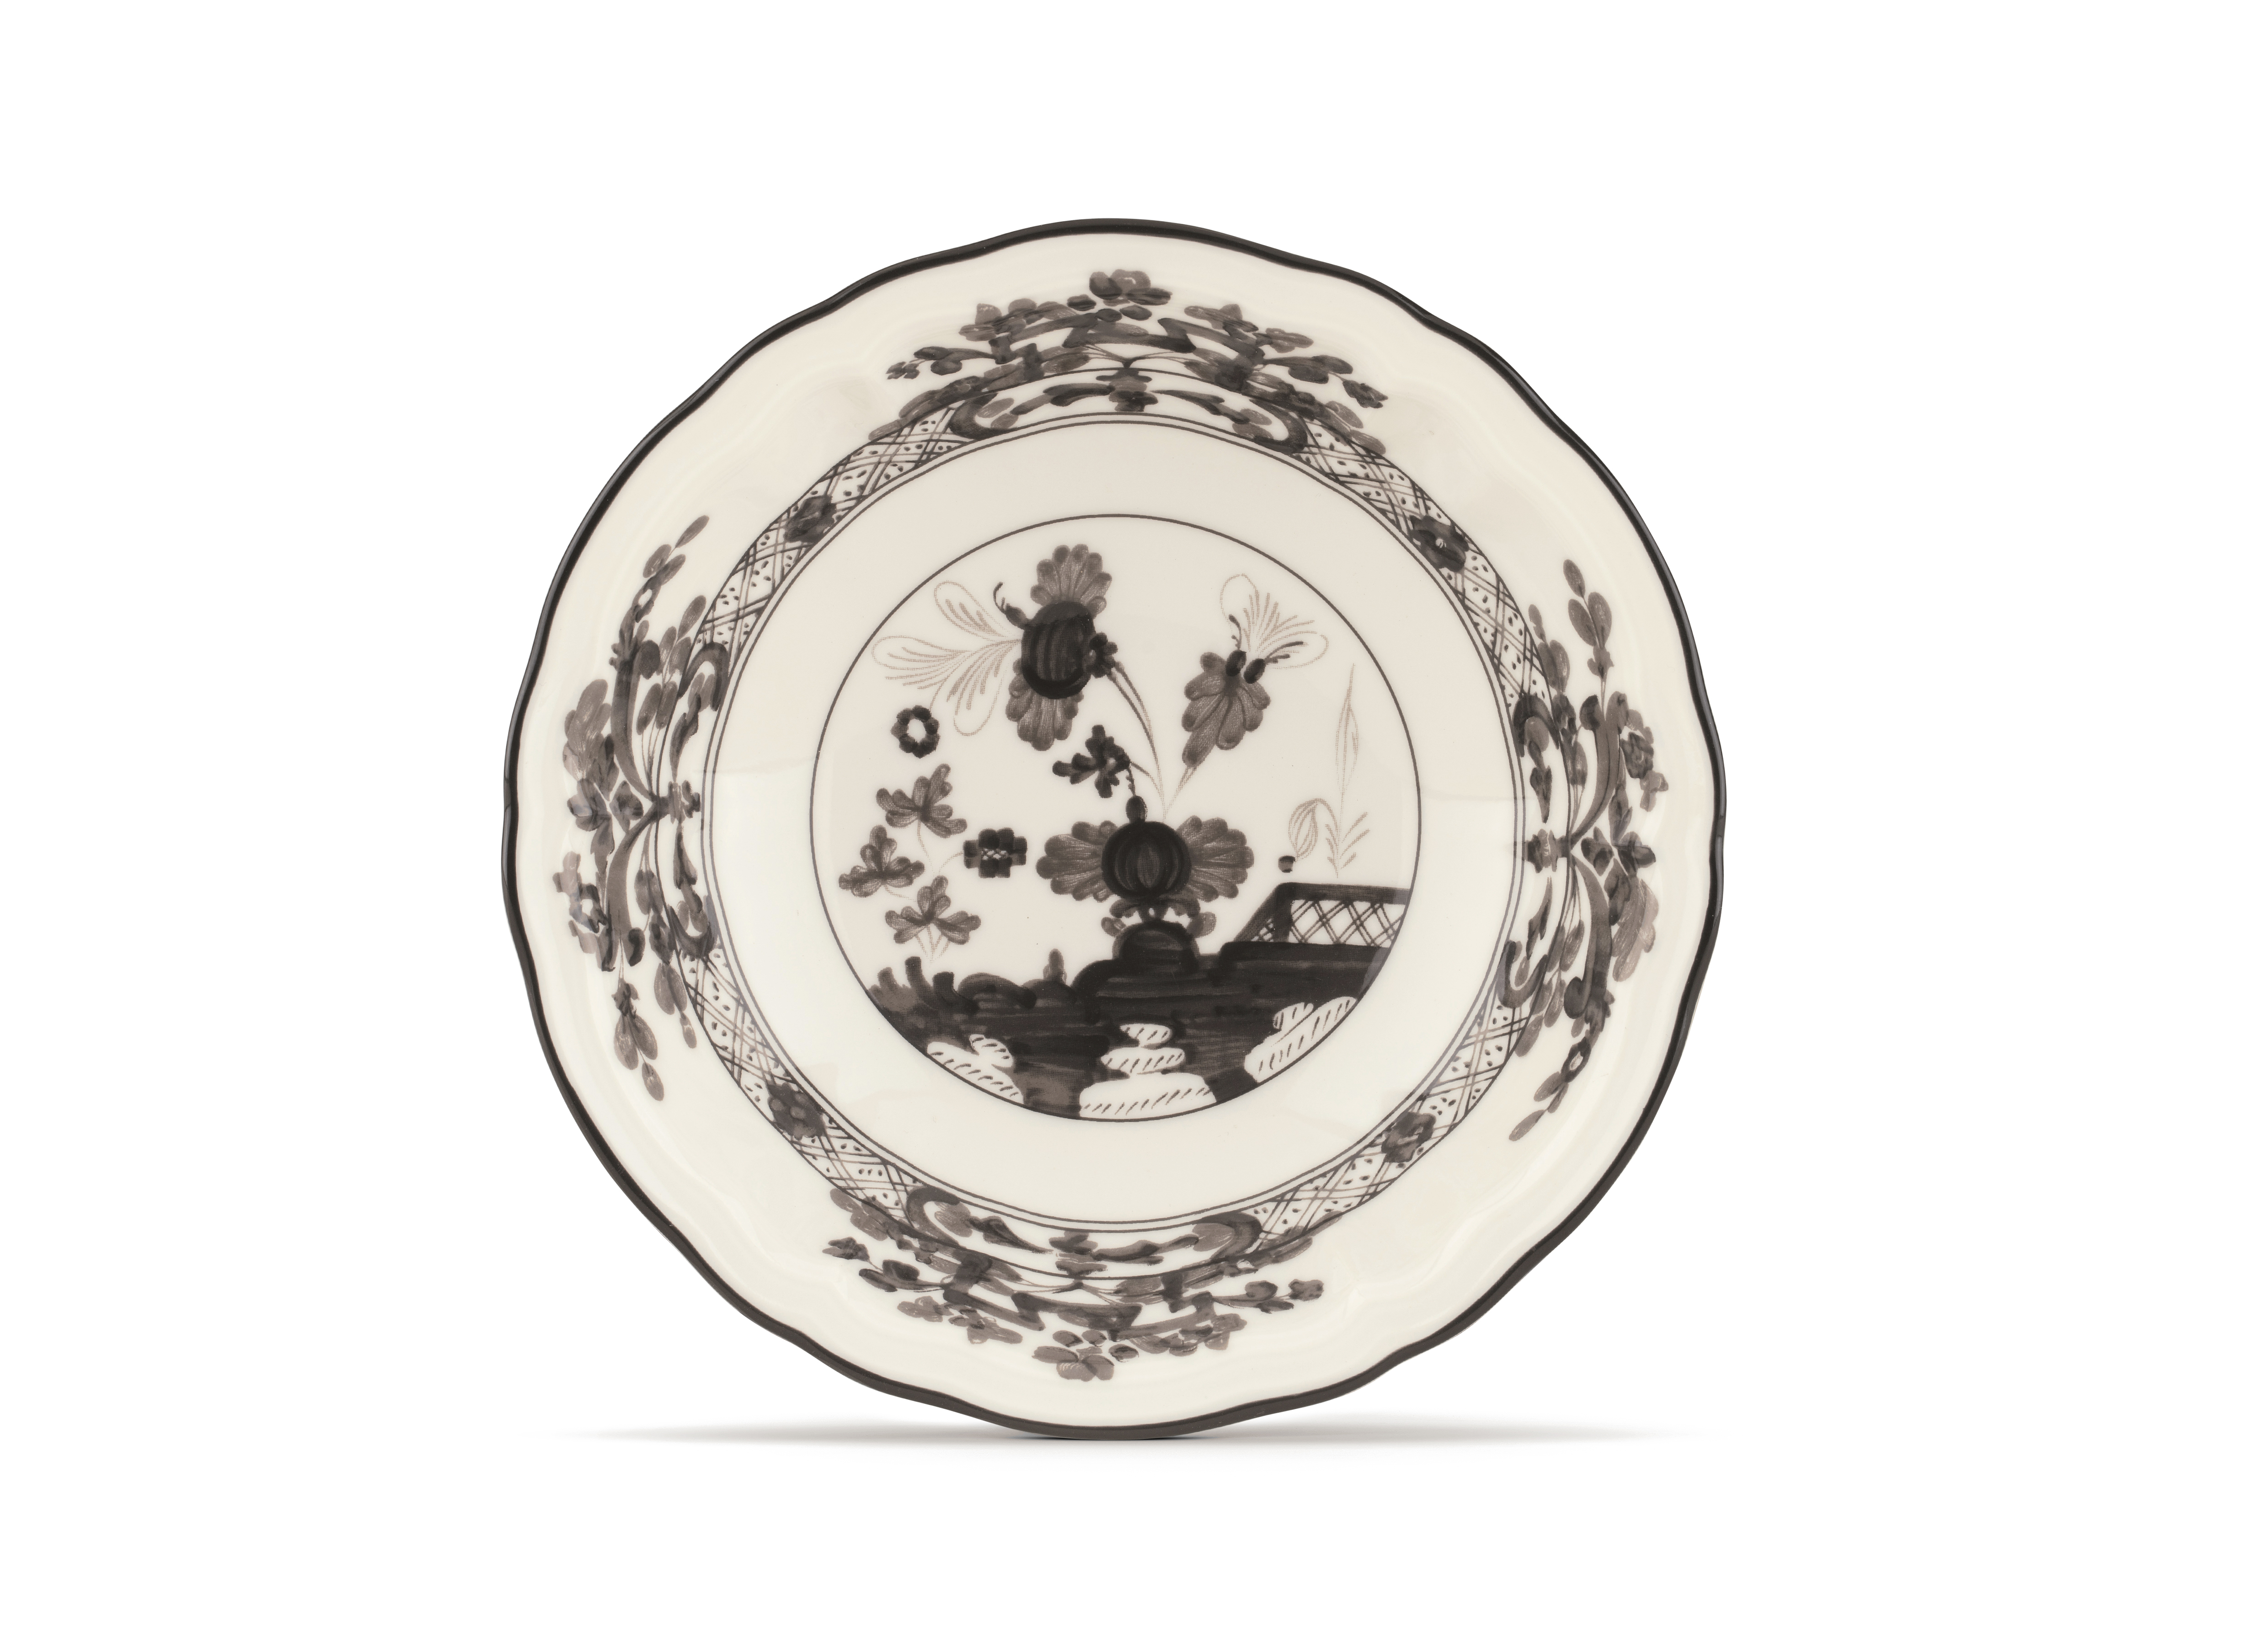 Albus-white porcelain small bowl set